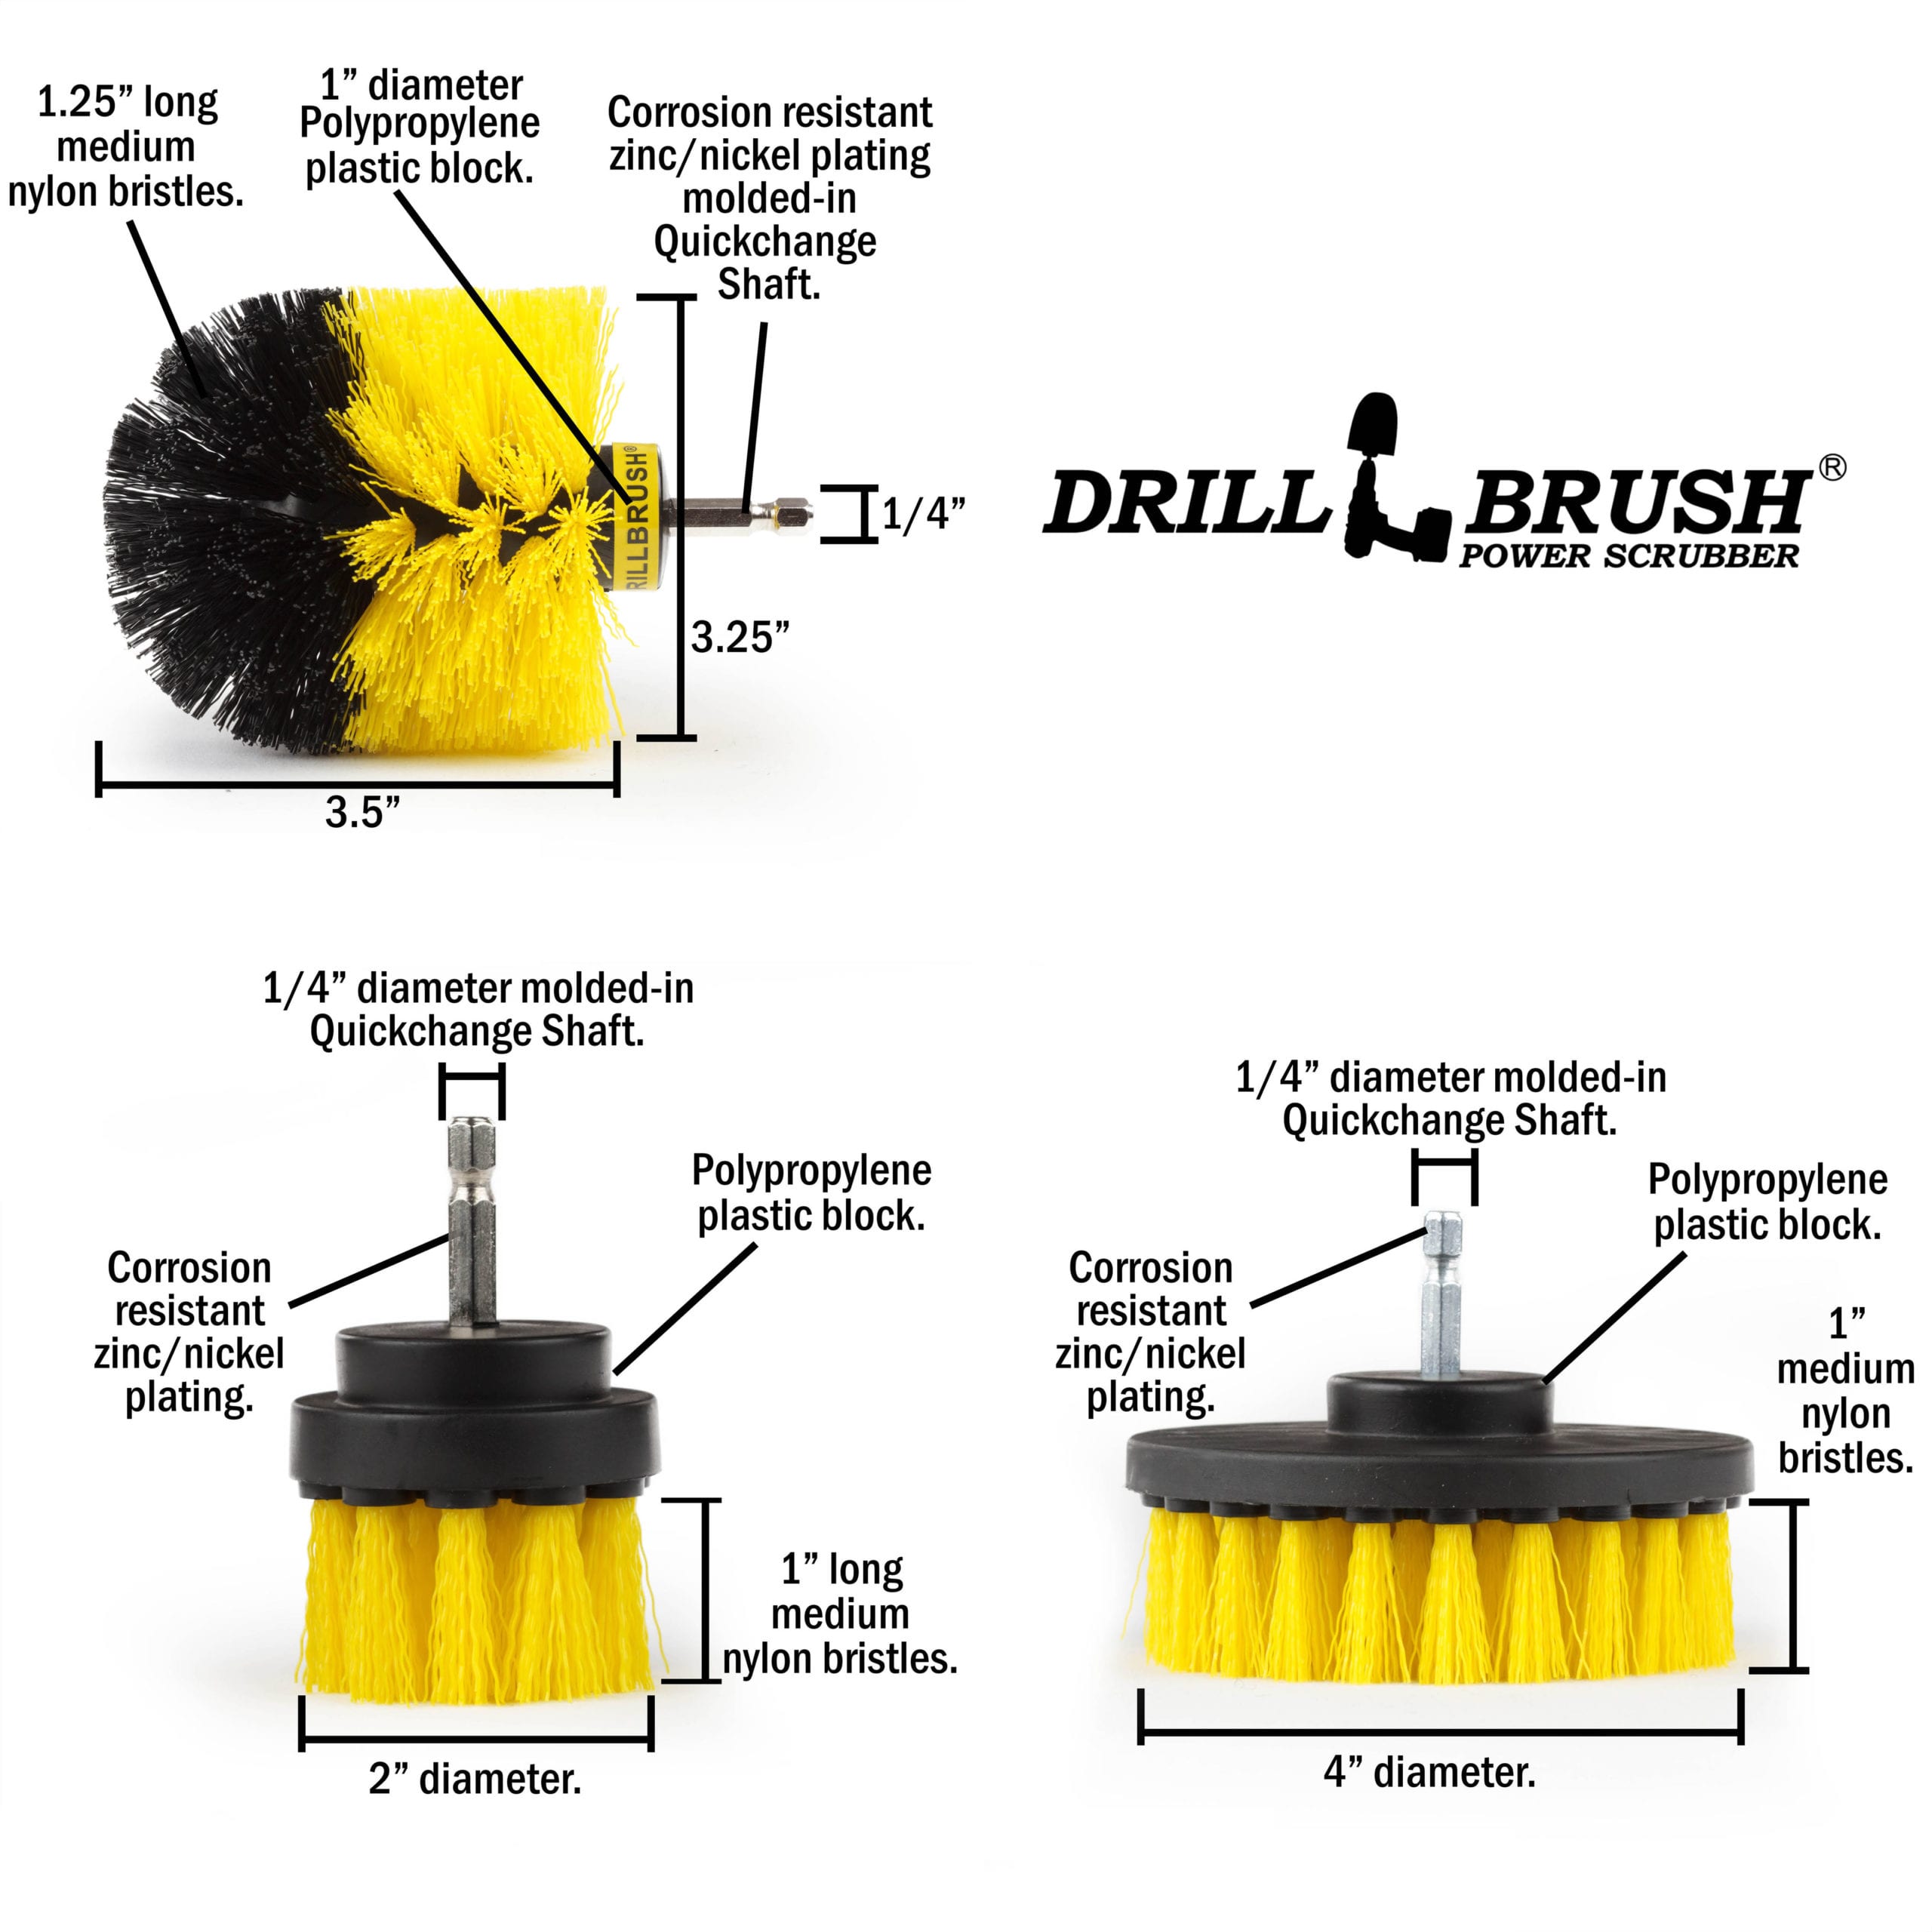 Original, 4in, & 2in Medium Yellow Brushes w/ 4in Variety Pads - Bathr –  Drillbrush